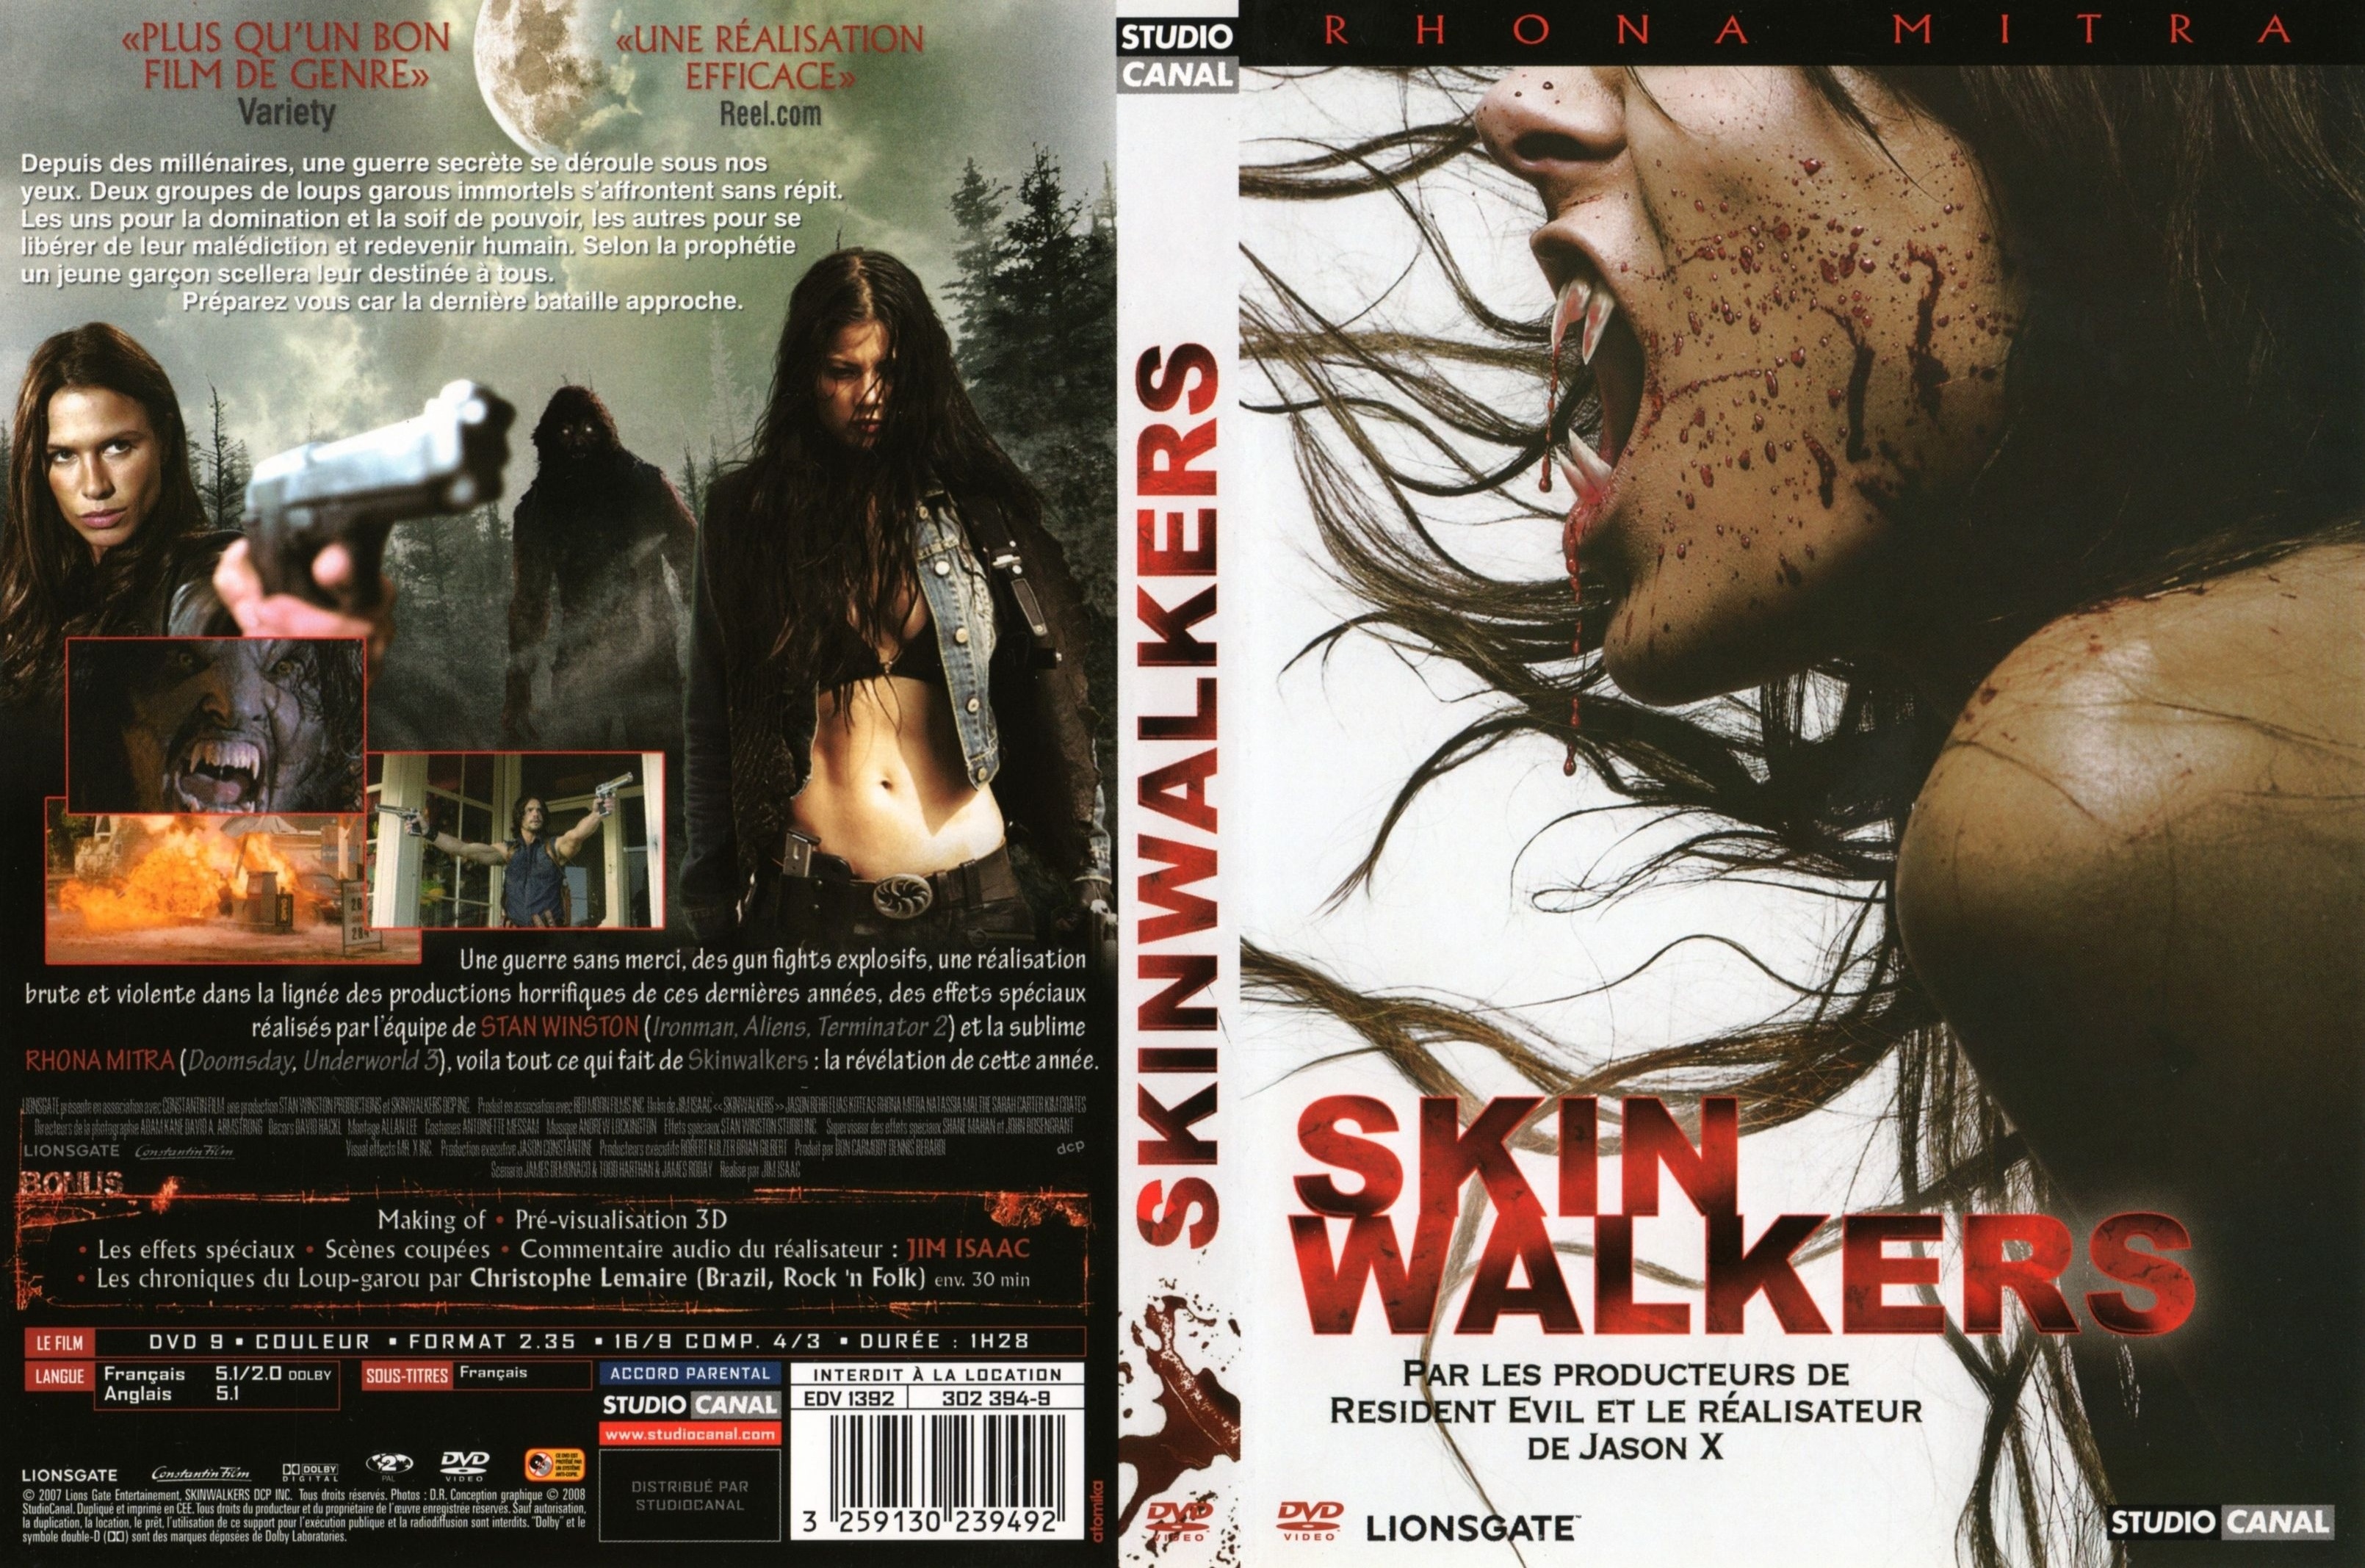 Jaquette DVD Skin walkers v2